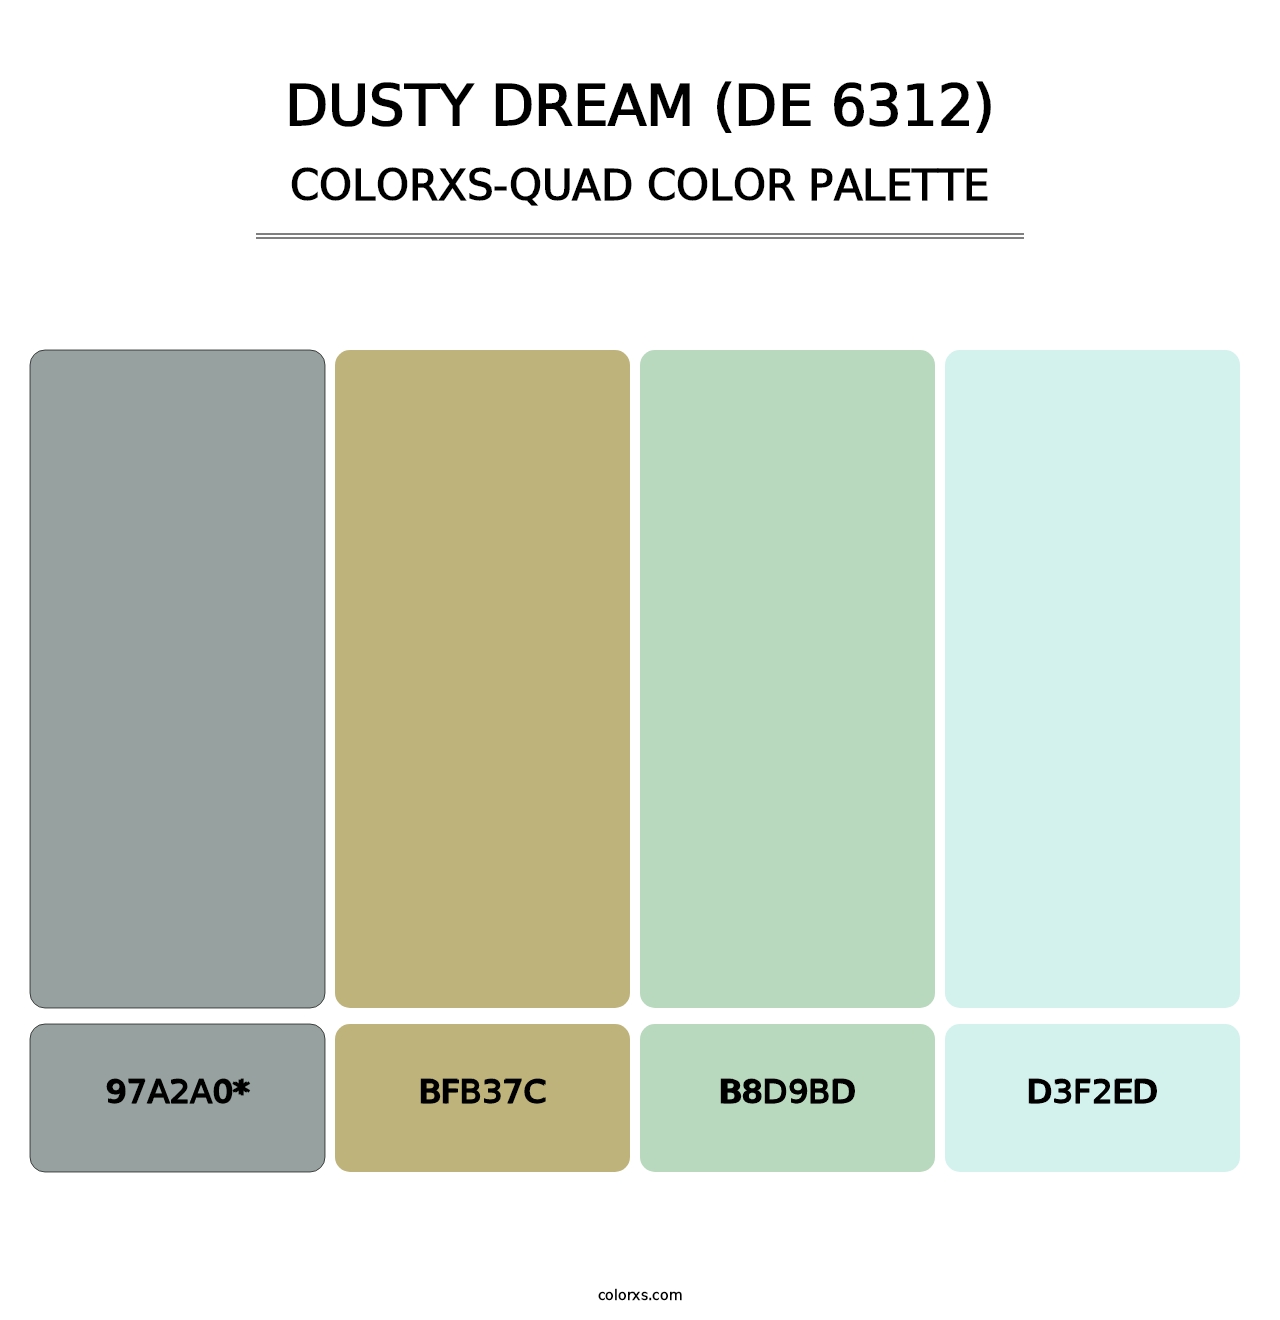 Dusty Dream (DE 6312) - Colorxs Quad Palette